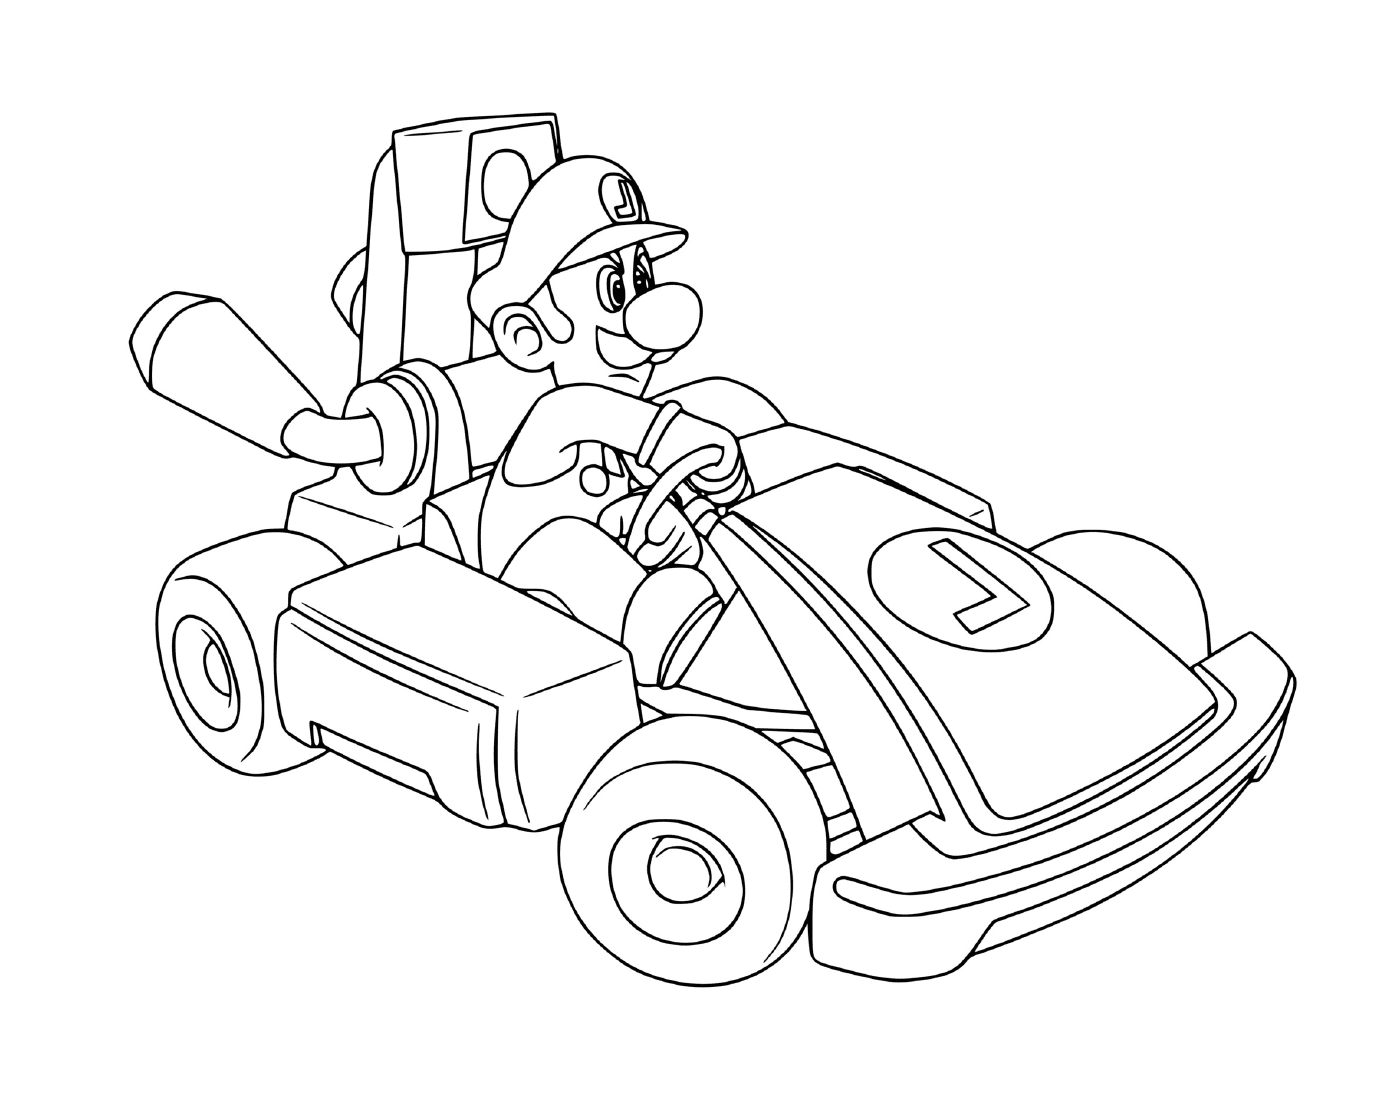  Mario Kart pista de corrida ao vivo 